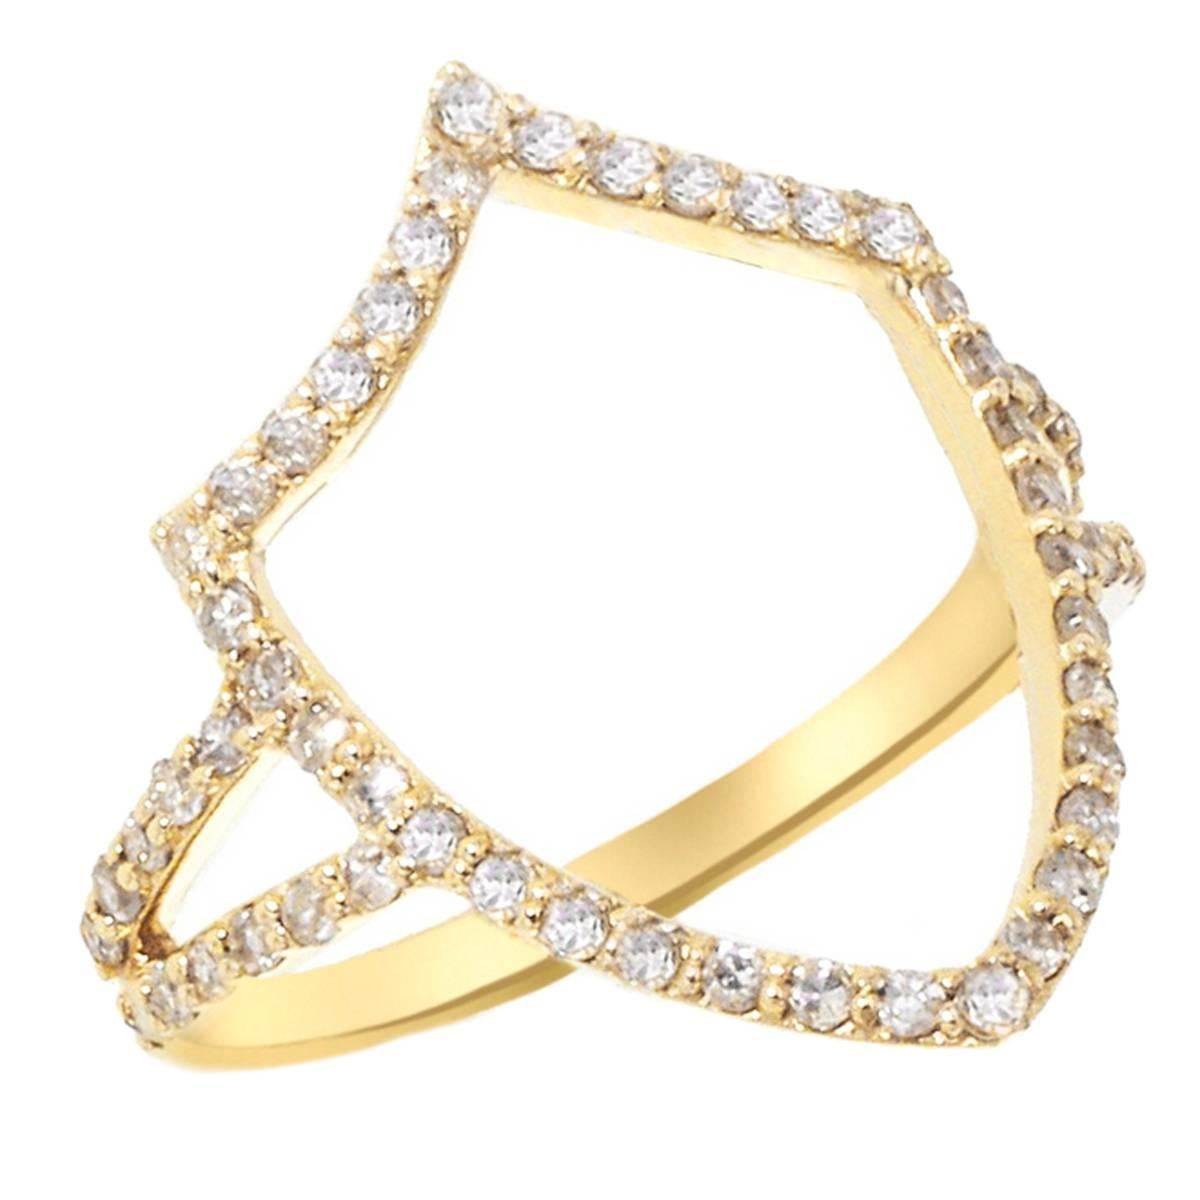 Insignia Chevron Shield Diamond and Gold Ring